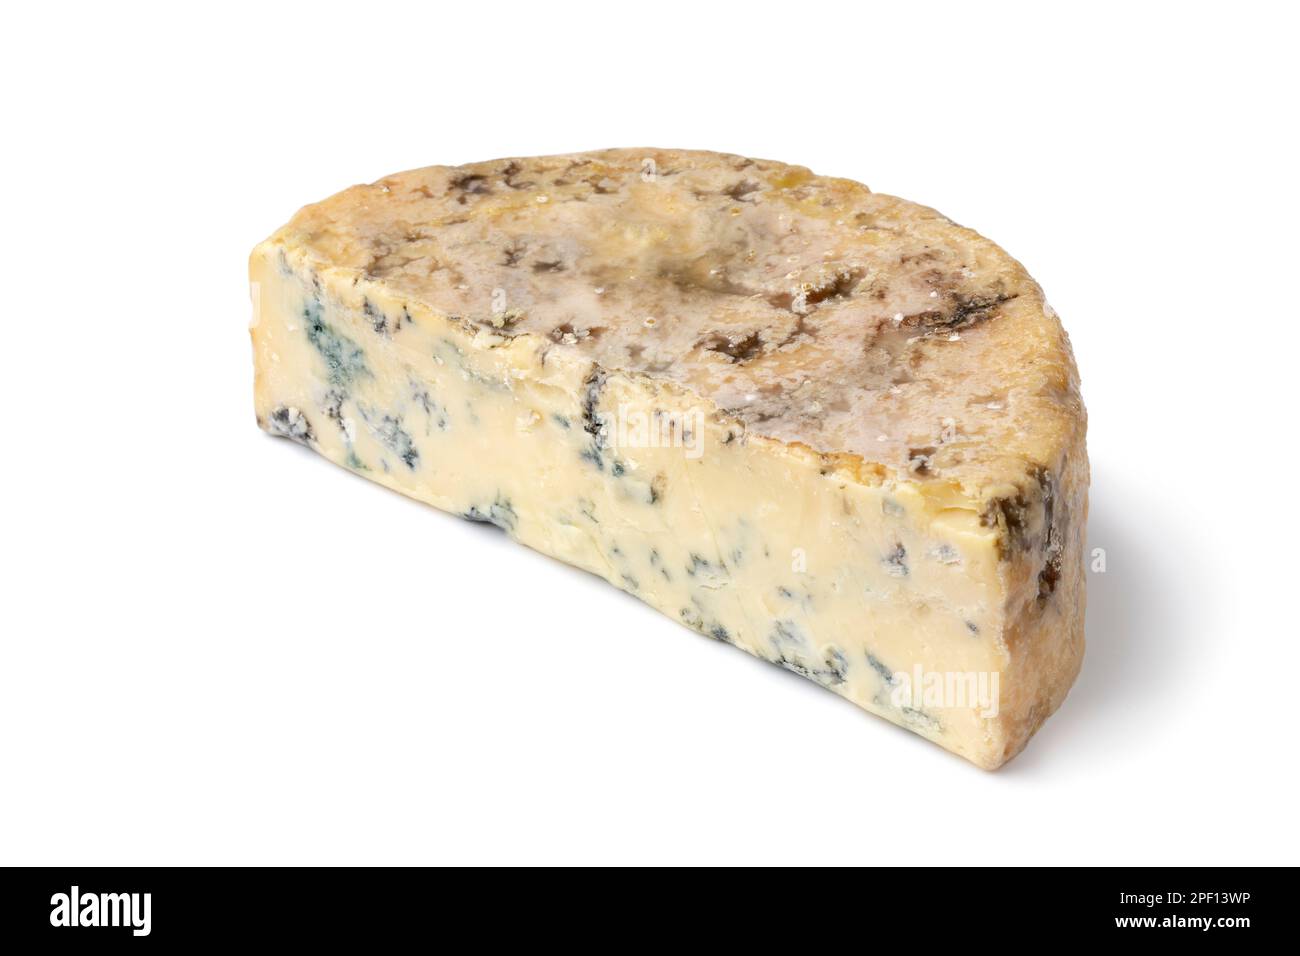 Morceau de fromage bleu traditionnel Stilton anglais gros plan sur fond blanc Banque D'Images